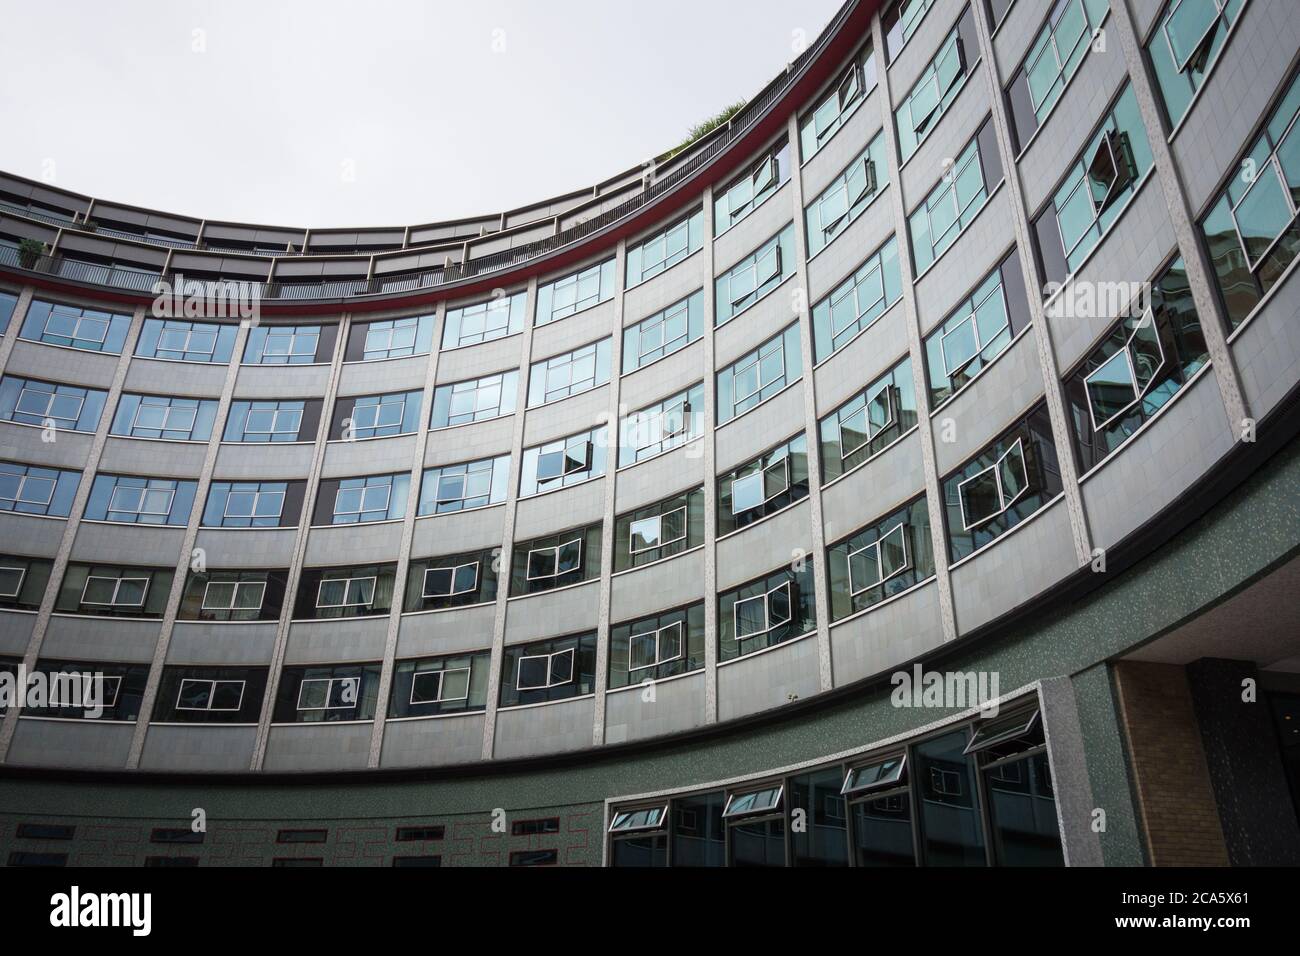 Das Helios Courtyard im ehemaligen BBC Television Centre, Wood Lane, London, Großbritannien Stockfoto